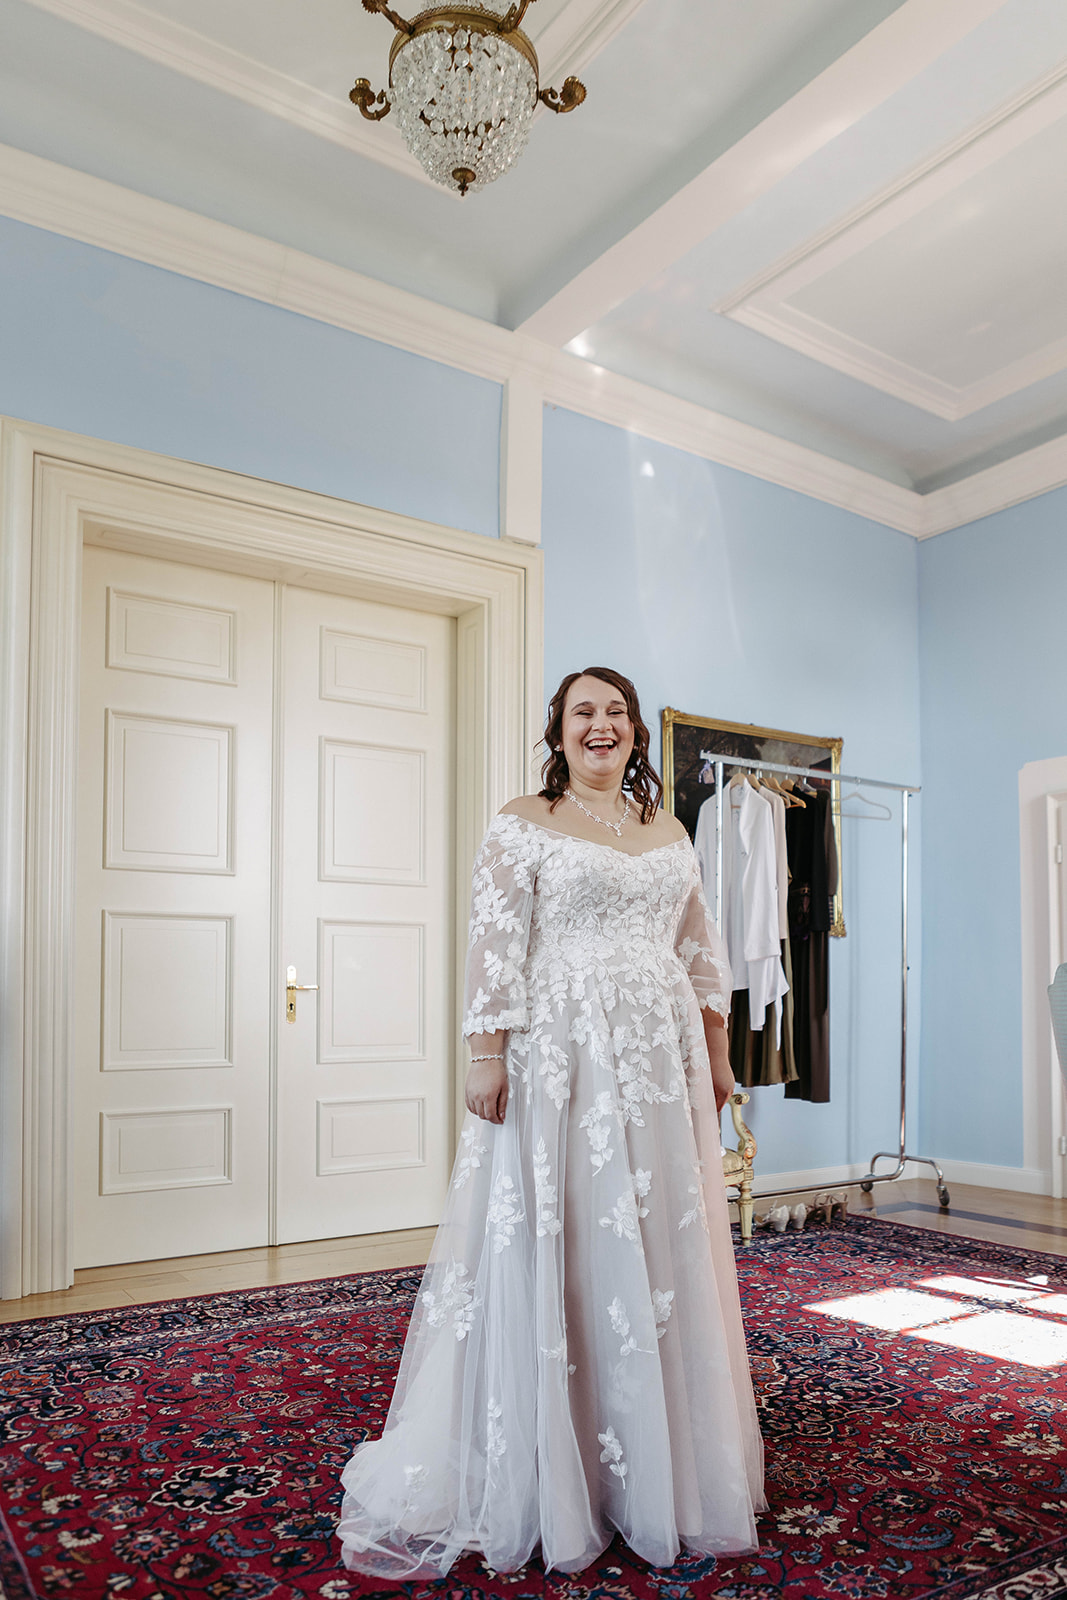 Strahlende Braut in vollem Hochzeitskleid vor Spiegel im historischen Brautzimmer – Eleganz und Vorfreude auf Hochzeit.